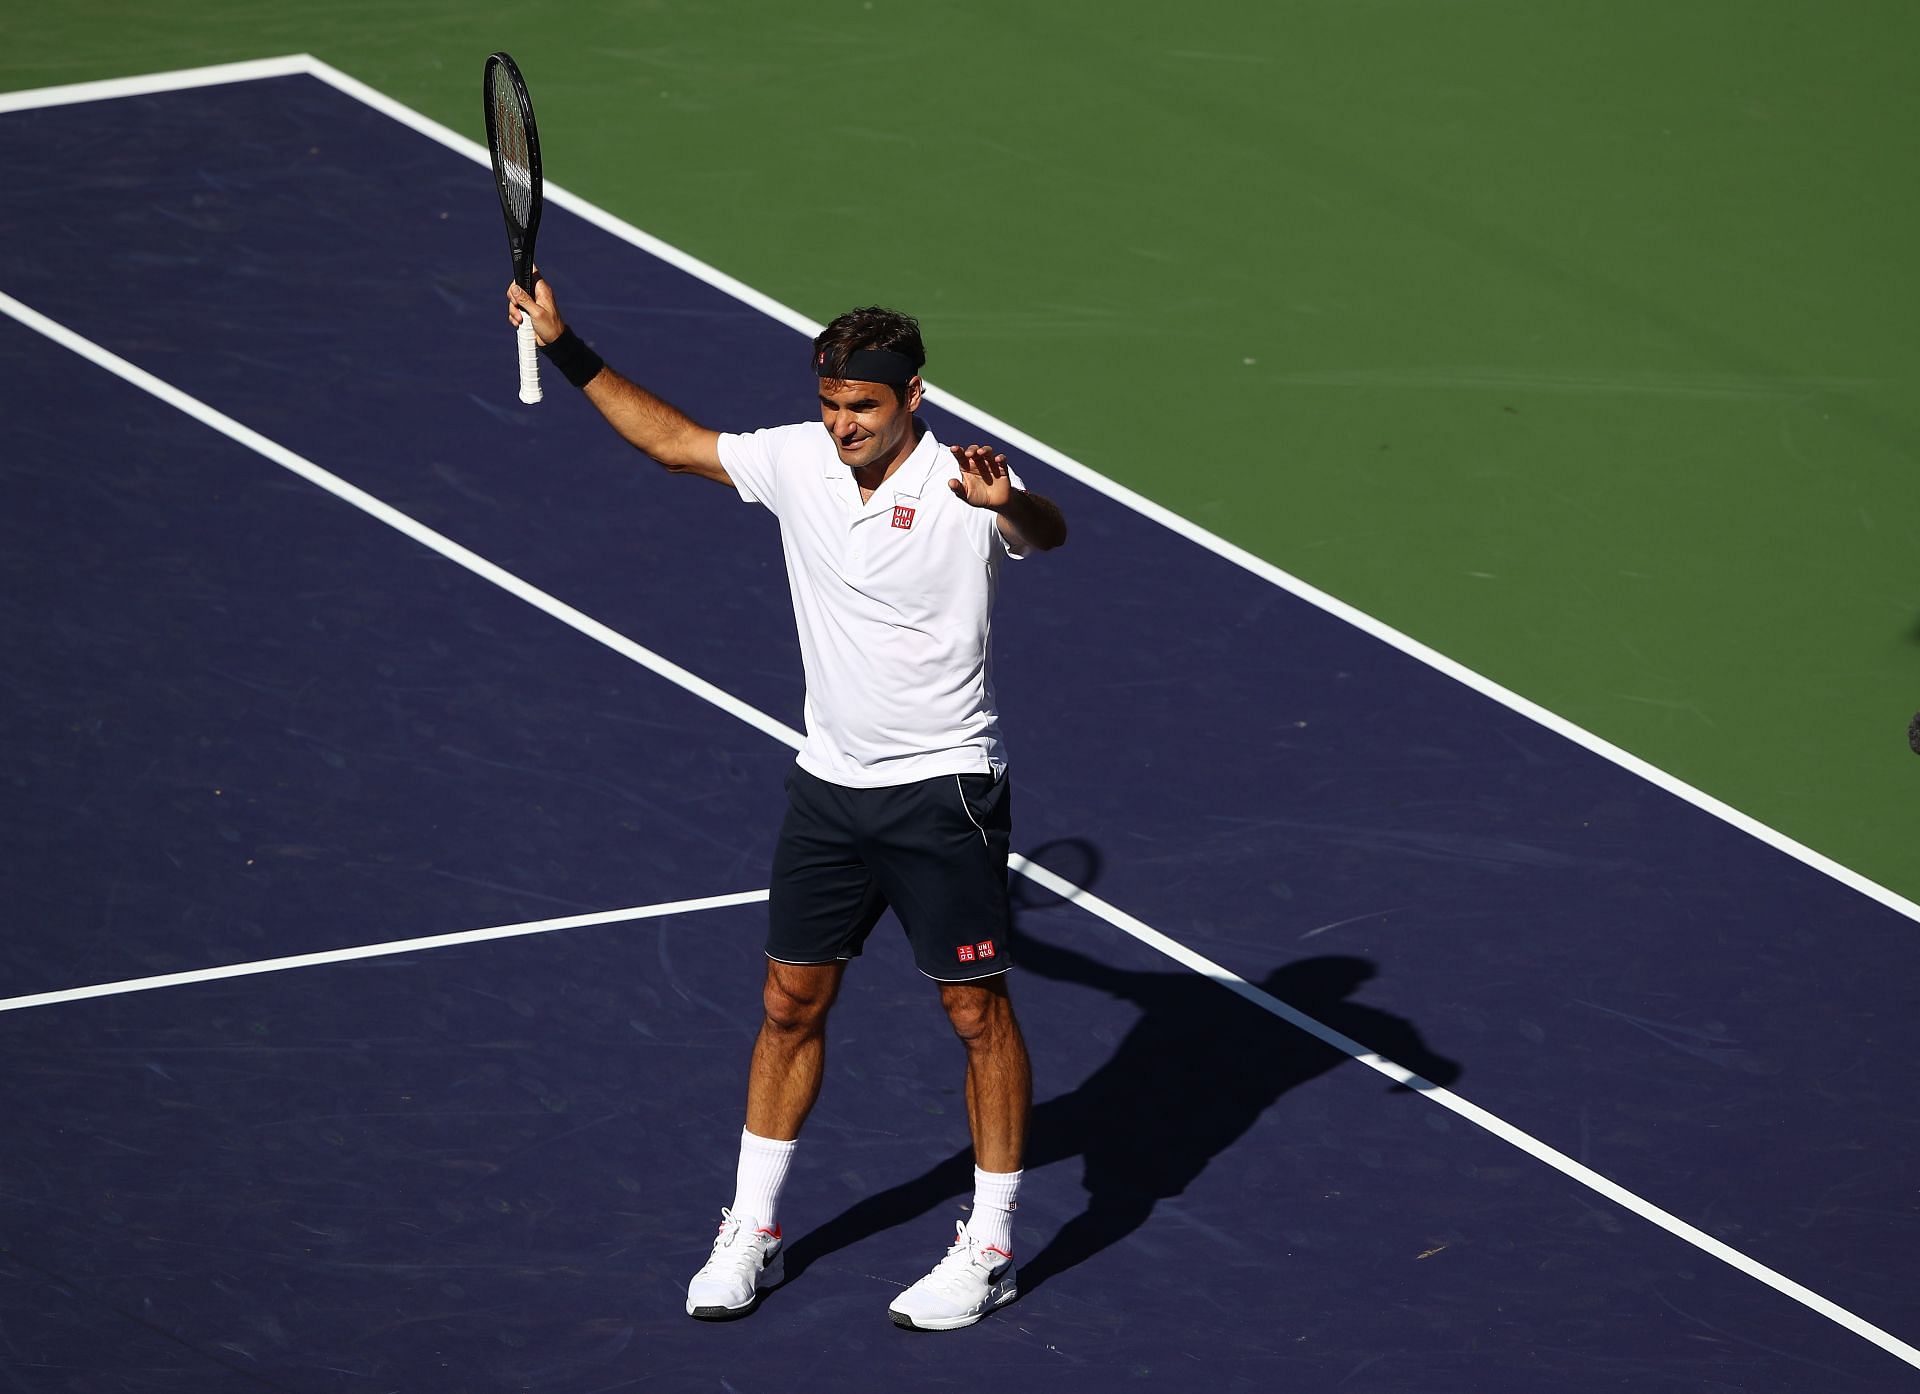 Roger Federer at Indian Wells Masters